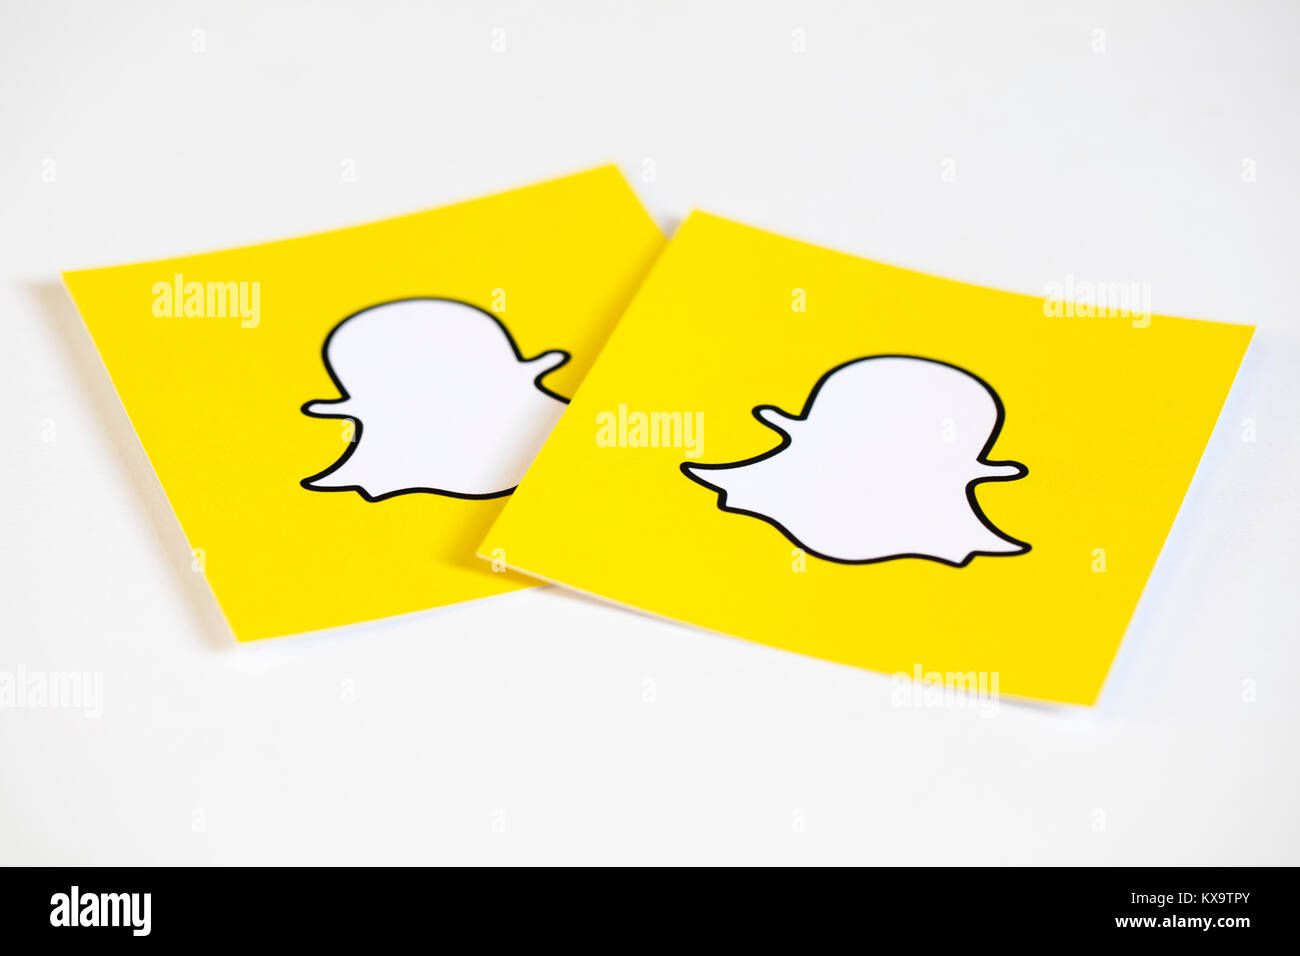 OXFORD, Regno Unito - 5 dicembre 2016: Snapchat logo stampato su carta. Snapchat è un popolare social media applicazione per la condivisione di messaggi, immagini e video Foto Stock